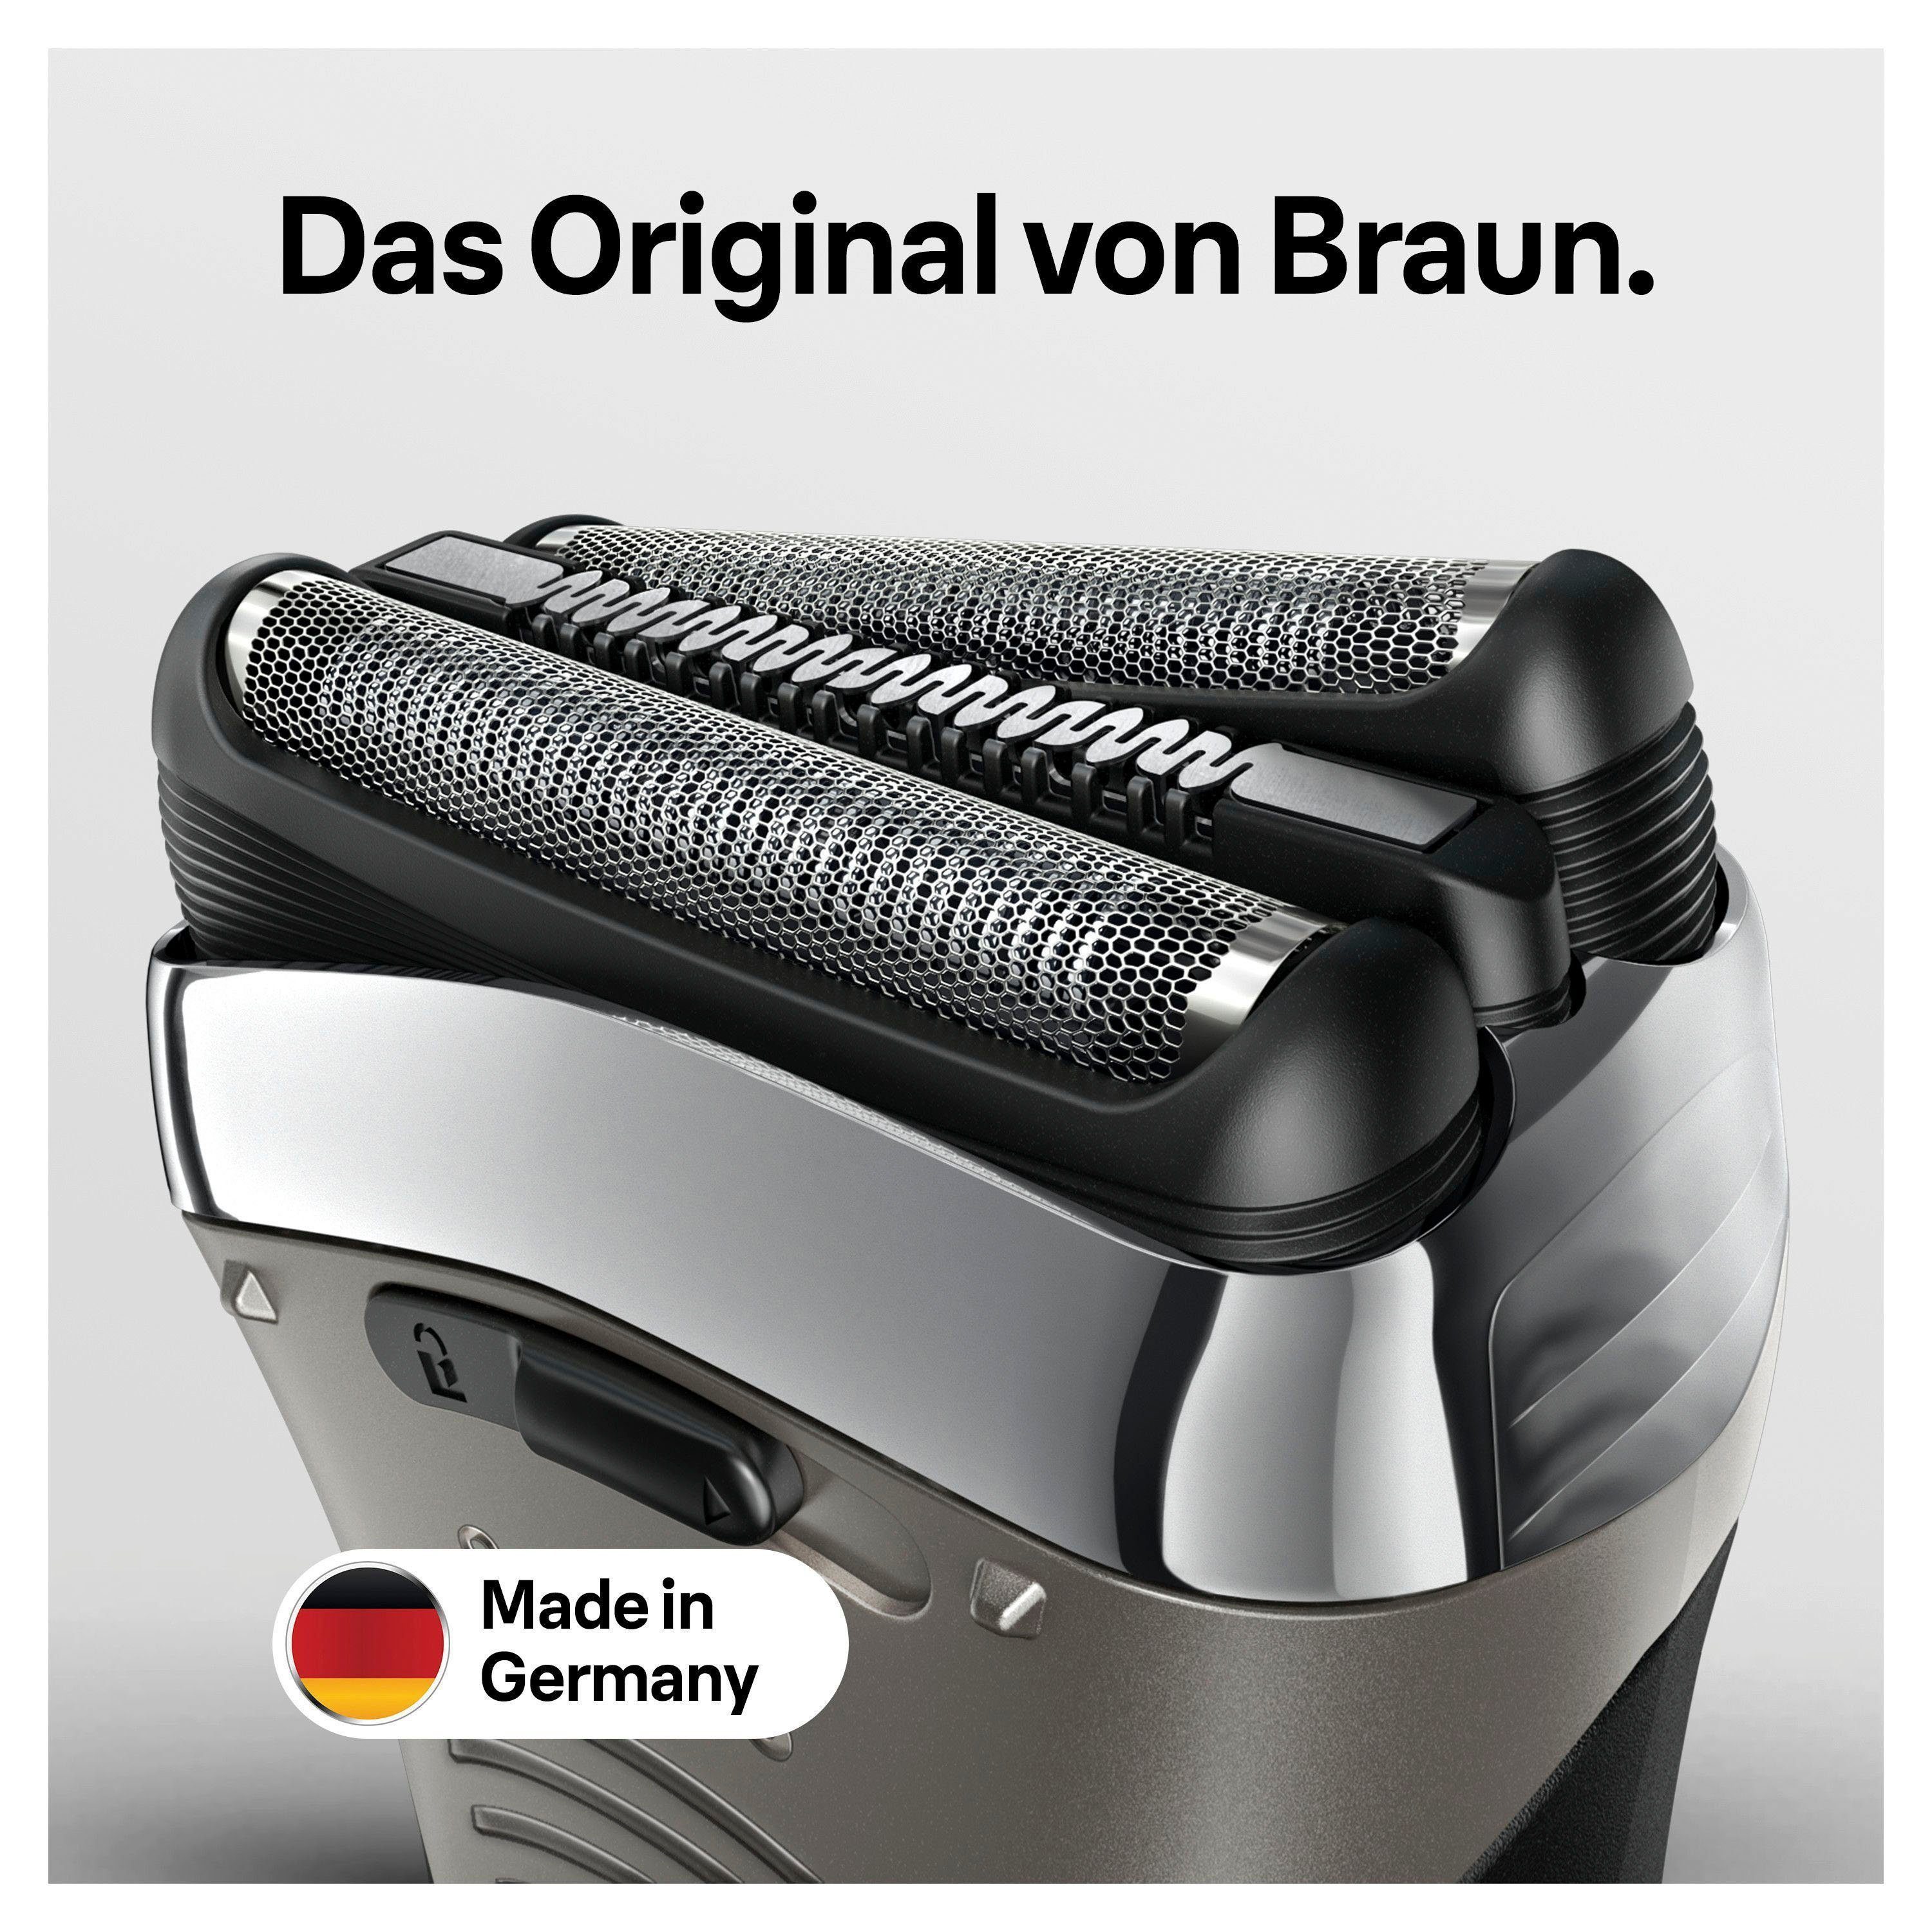 Braun kompatibel Ersatzscherteil 32, 3 silberfarben Series mit 3 Rasierern Series